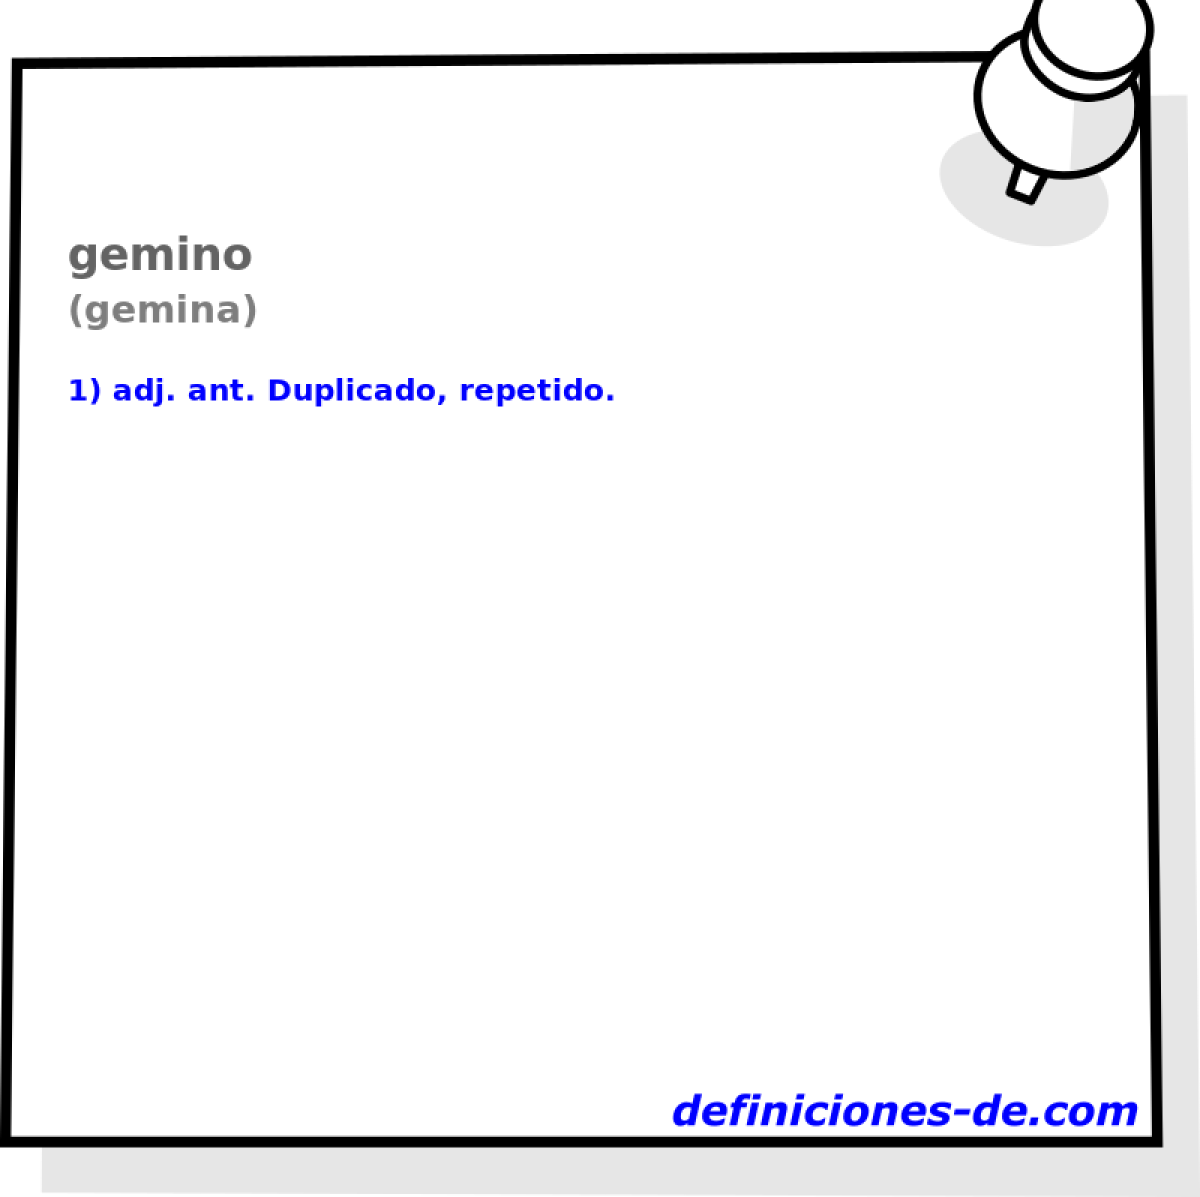 gemino (gemina)